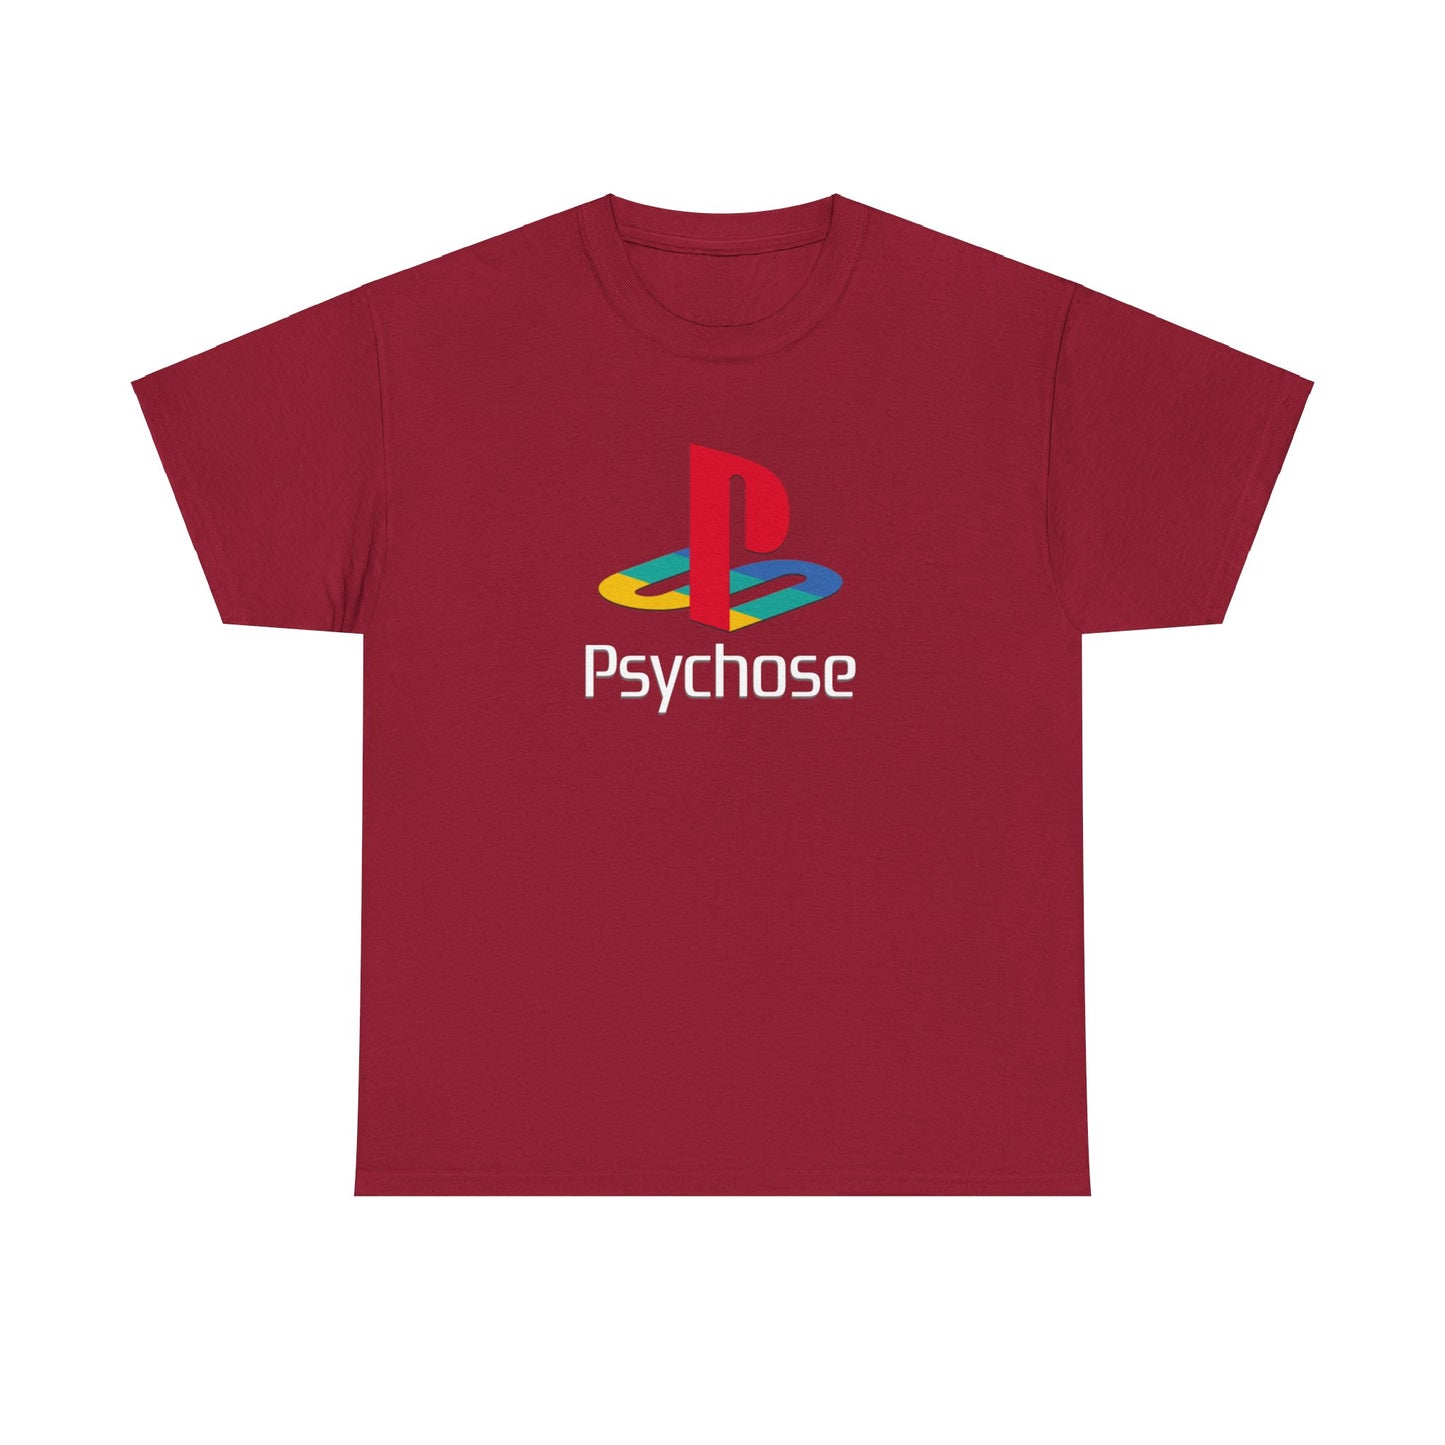 Entdecke unser exklusives T-Shirt mit dem legendären Playstation Logo. Perfekt für Gaming-Enthusiasten und Fans. Hochwertige Baumwolle, ultimativer Komfort. Hol dir jetzt dein stylisches Statement-Piece! Playstation Psycho T-Shirt als perfektes Geschenk für Freunde und Familie!